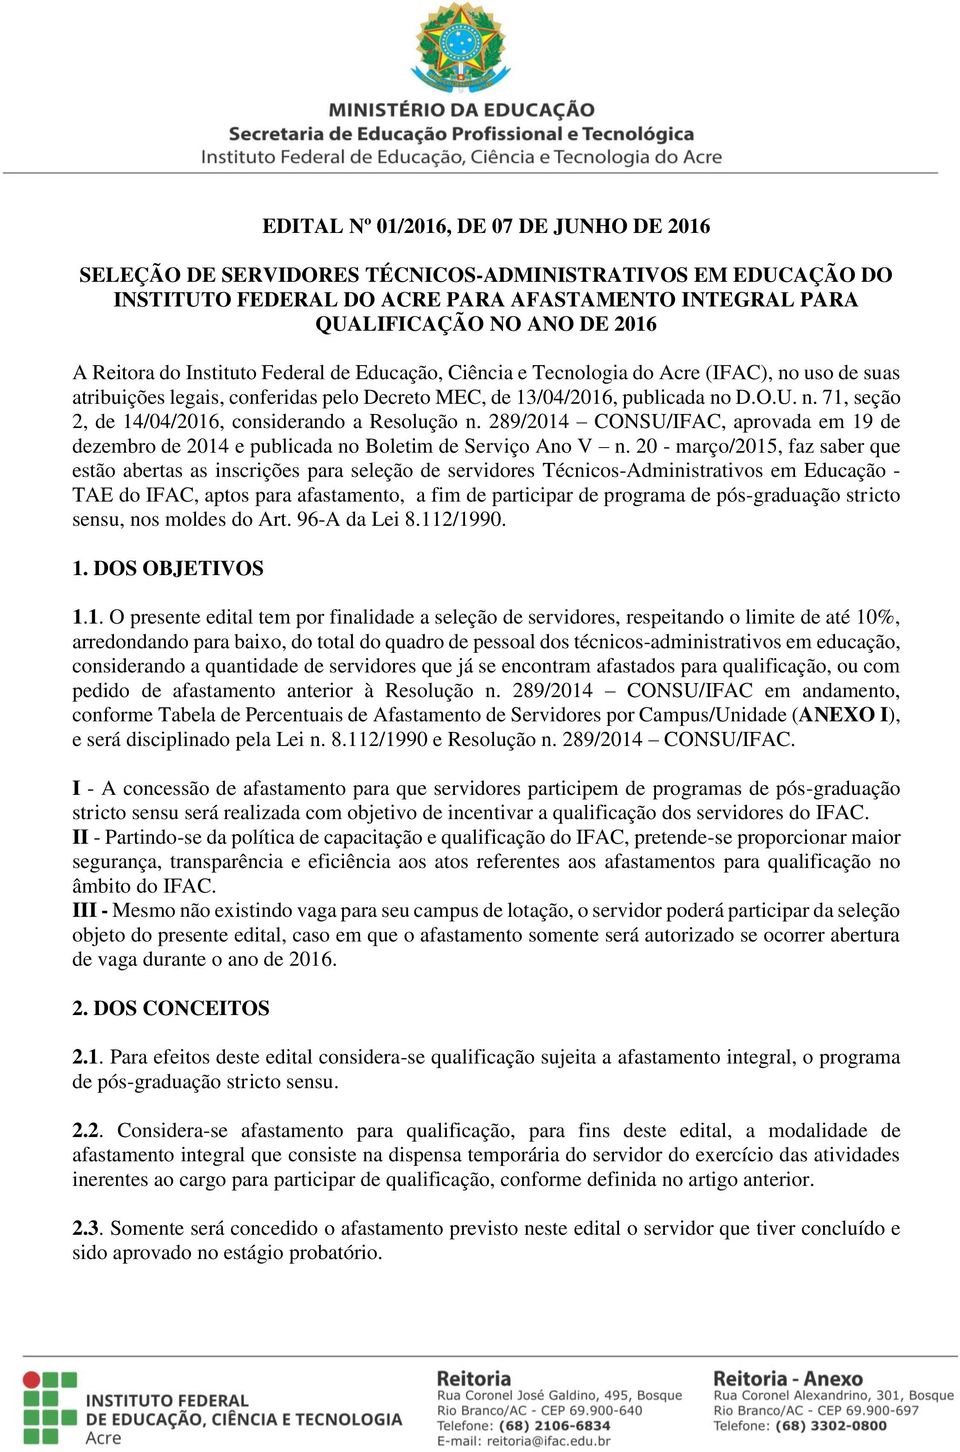 289/2014 CONSU/IFAC, aprovada em 19 de dezembro de 2014 e publicada no Boletim de Serviço Ano V n.